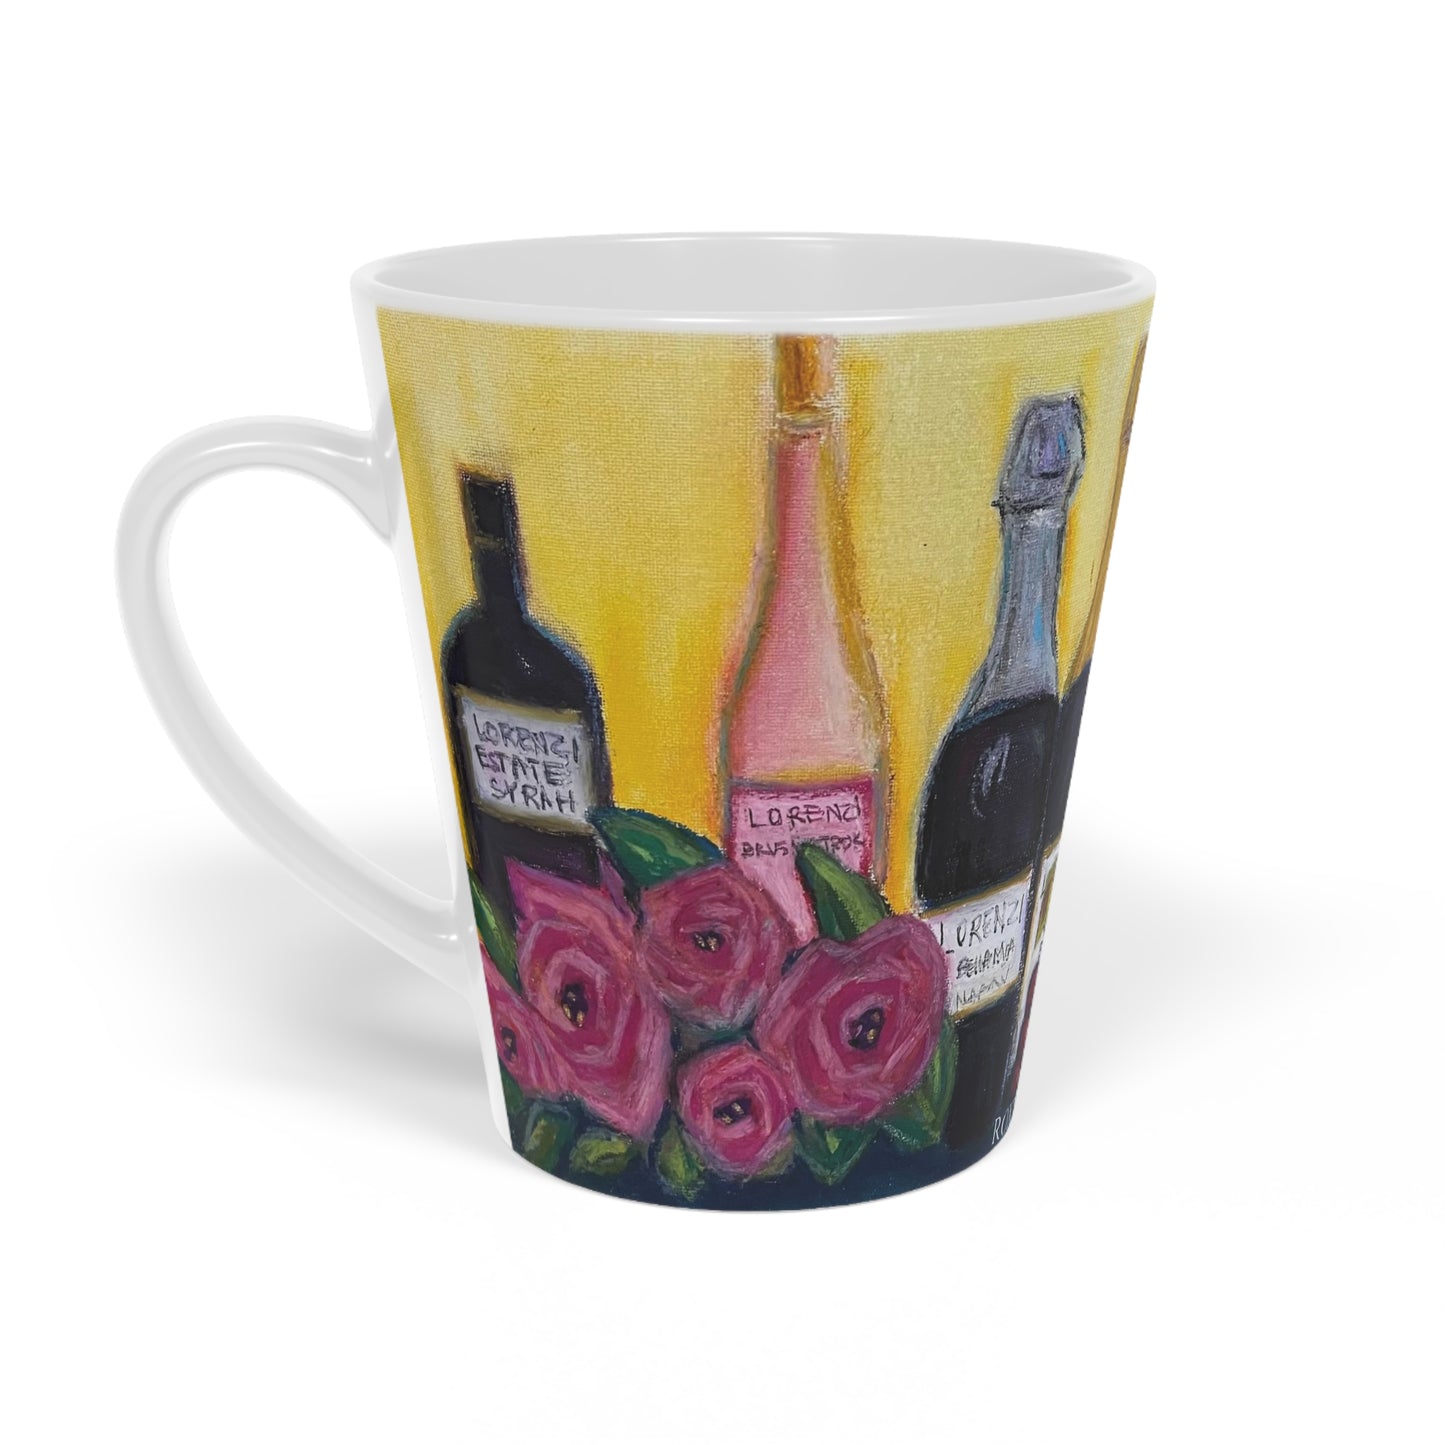 Lorenzi estate Wine and Roses Latte Mug, 12oz